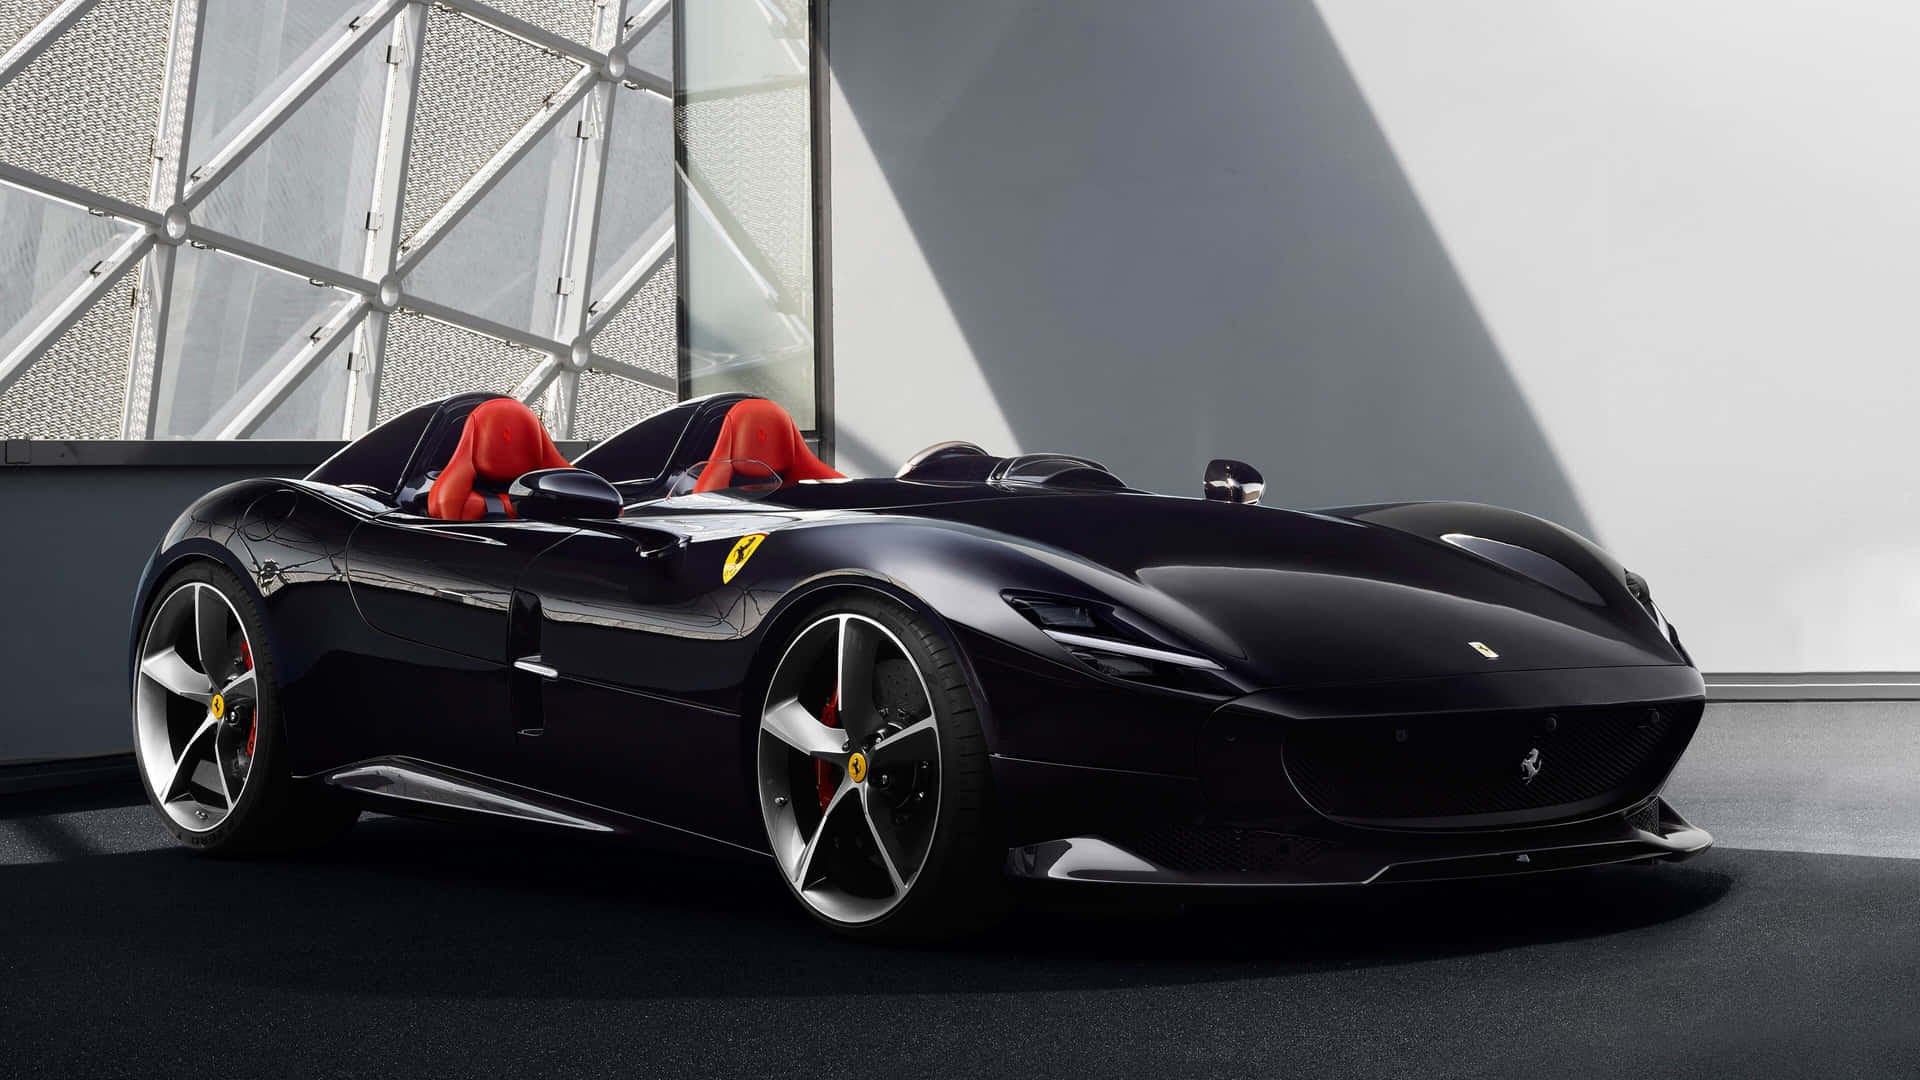 Download Ferrari F12tdf Concept Car | Wallpapers.com